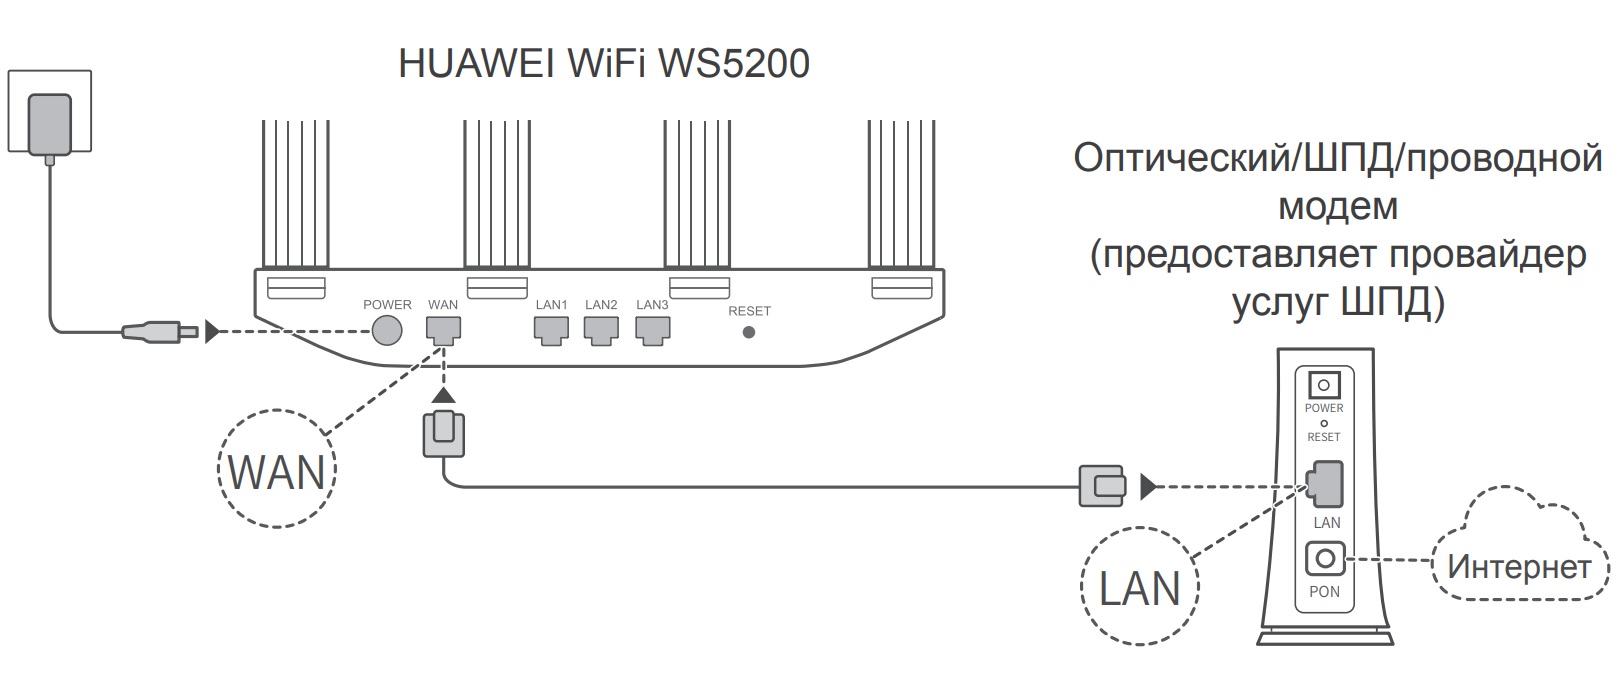 Честный обзор на Huawei WS5200 V2. Все что нужно, ничего лишнего и за разумные деньги.  - Обзор товара Wi-Fi роутер HUAWEI WS5200 V2,  белый (1194636) от dartsozon в интернет-магазине СИТИЛИНК – Ростов-на-Дону